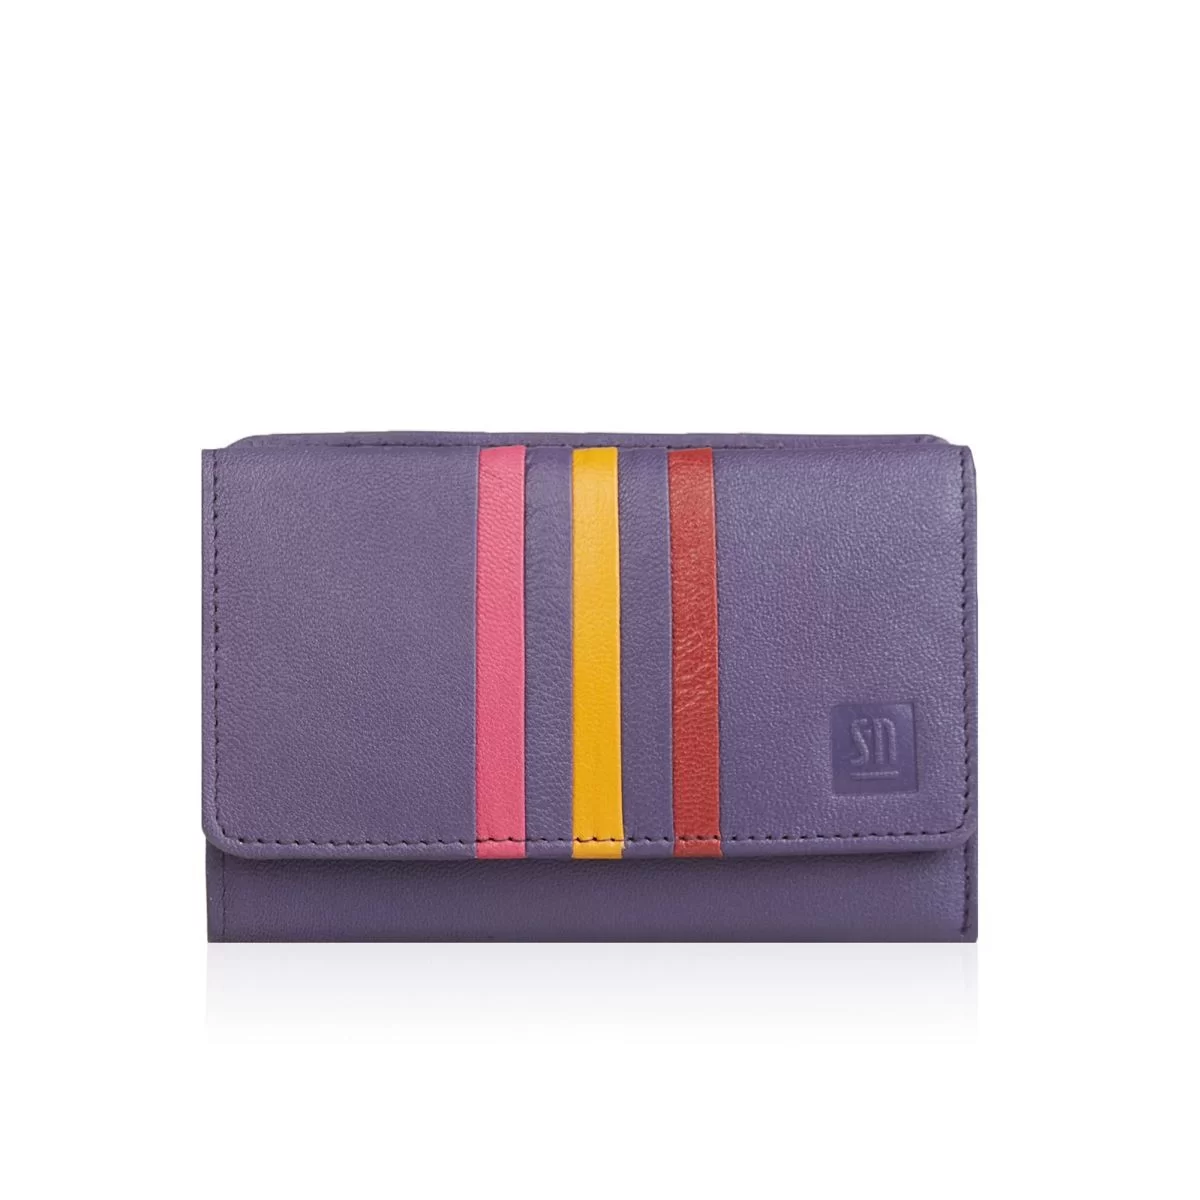 Kolorowe portfele damskie skórzane - Fioletowe - Fioletowy